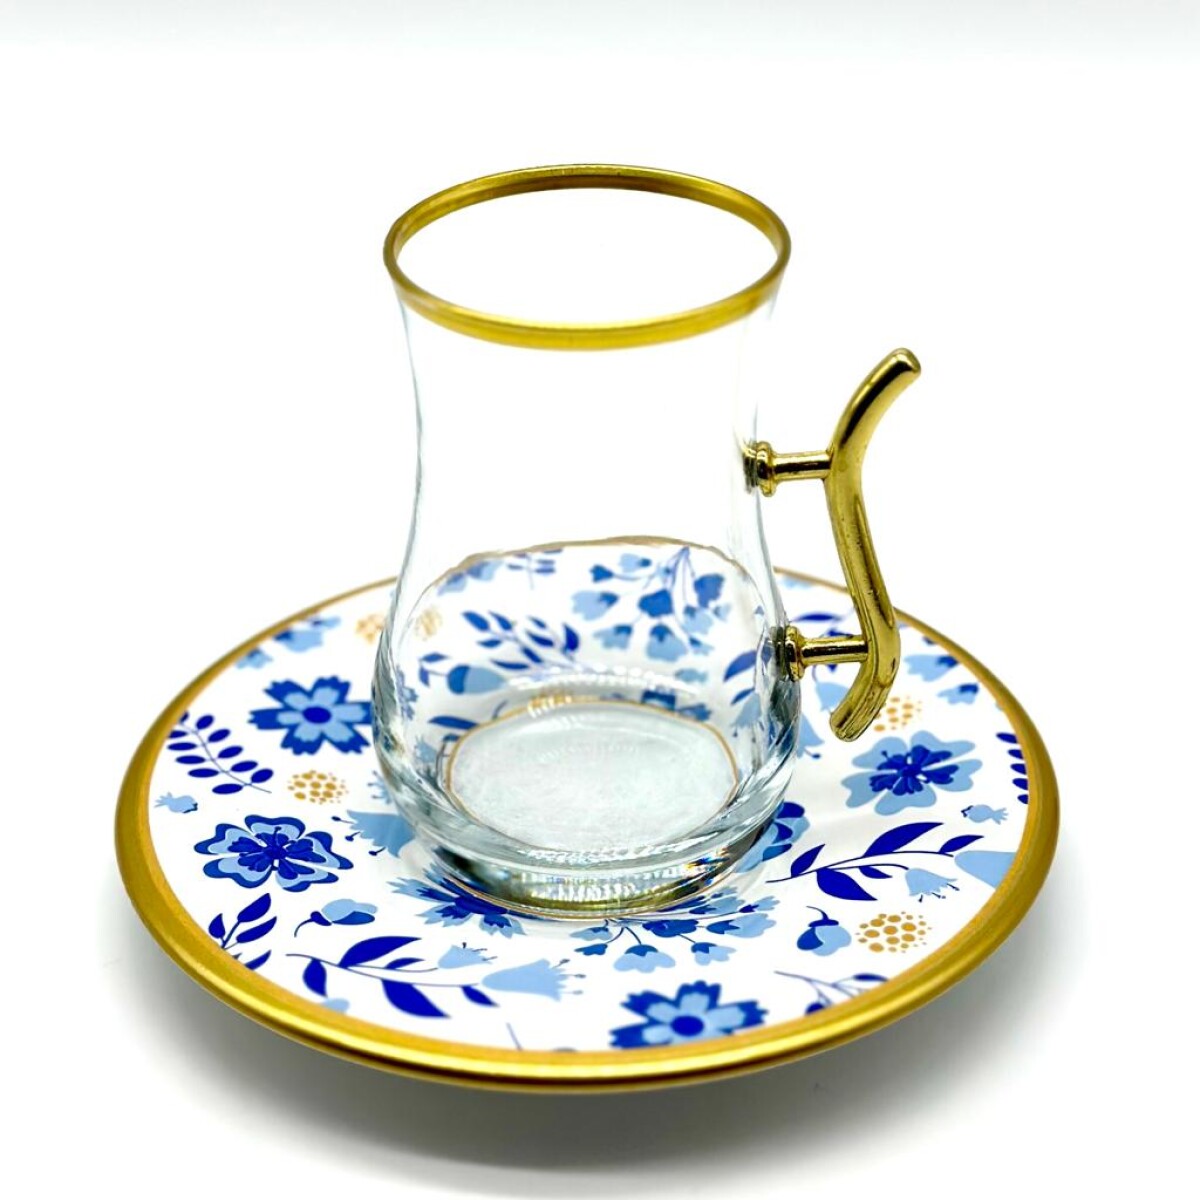 Vaso de té vip plato de cerámica x1 - Azul y blanco 